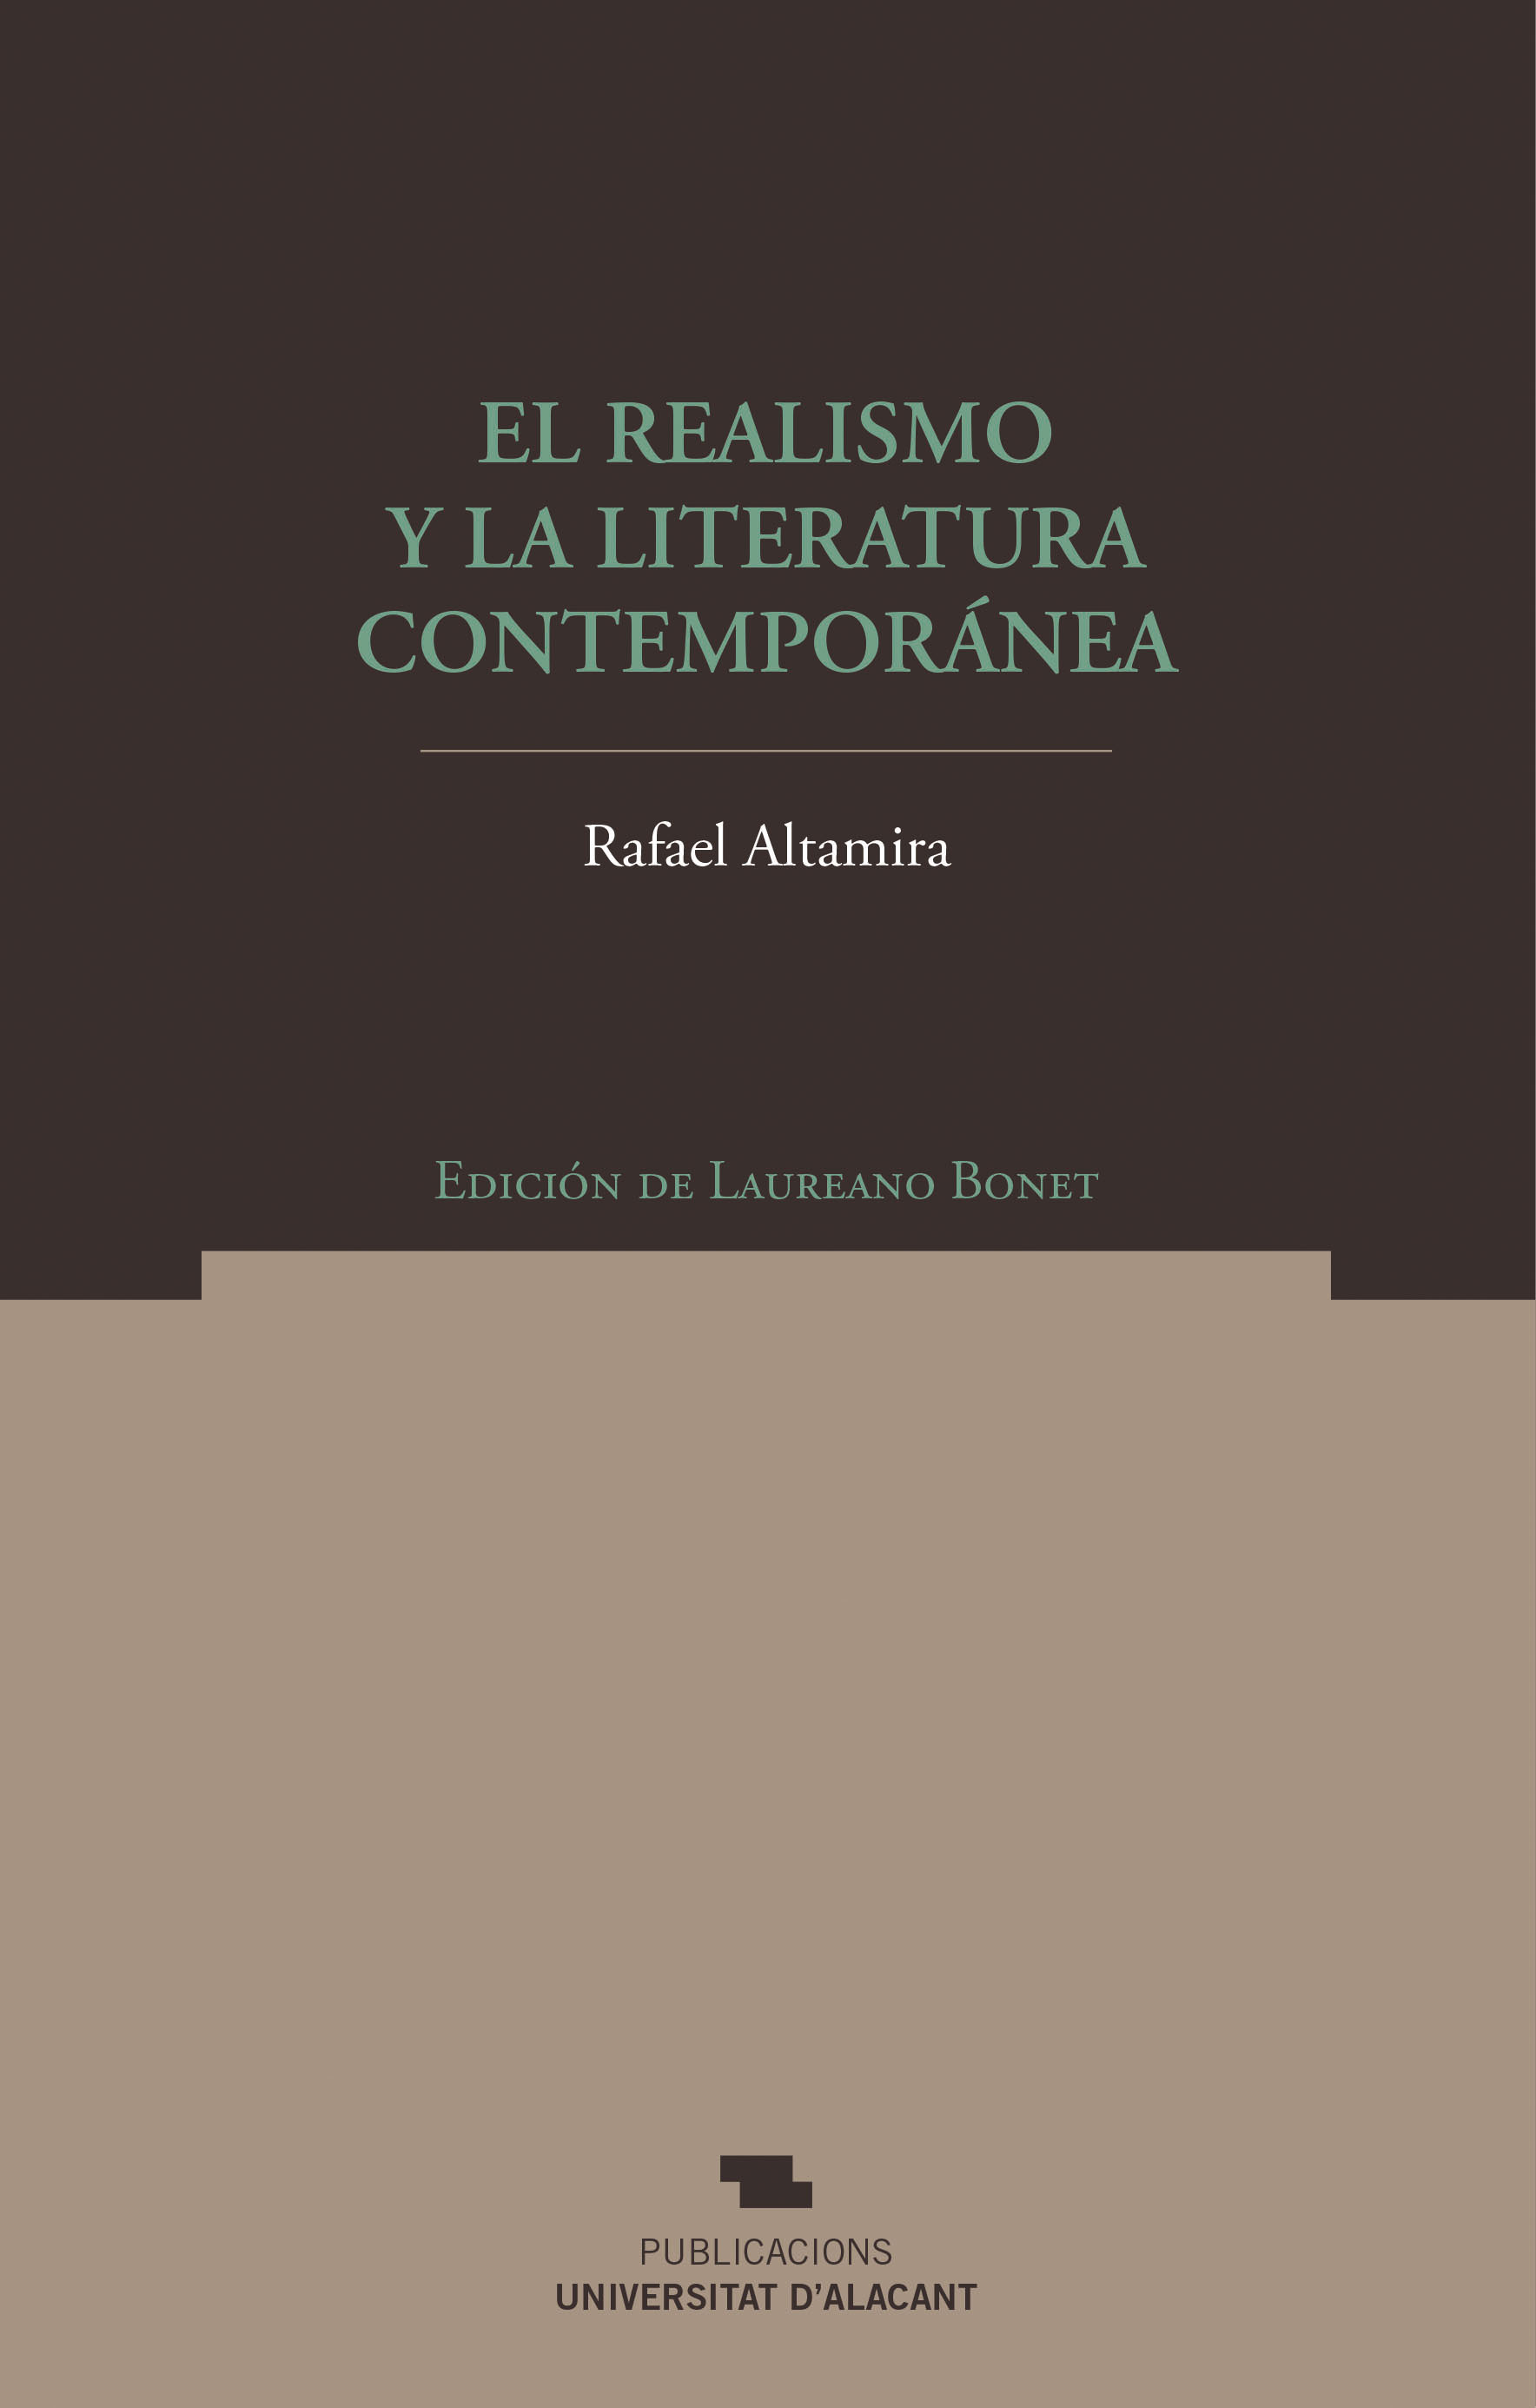 El Realismo y la literatura contemporÃ¡nea